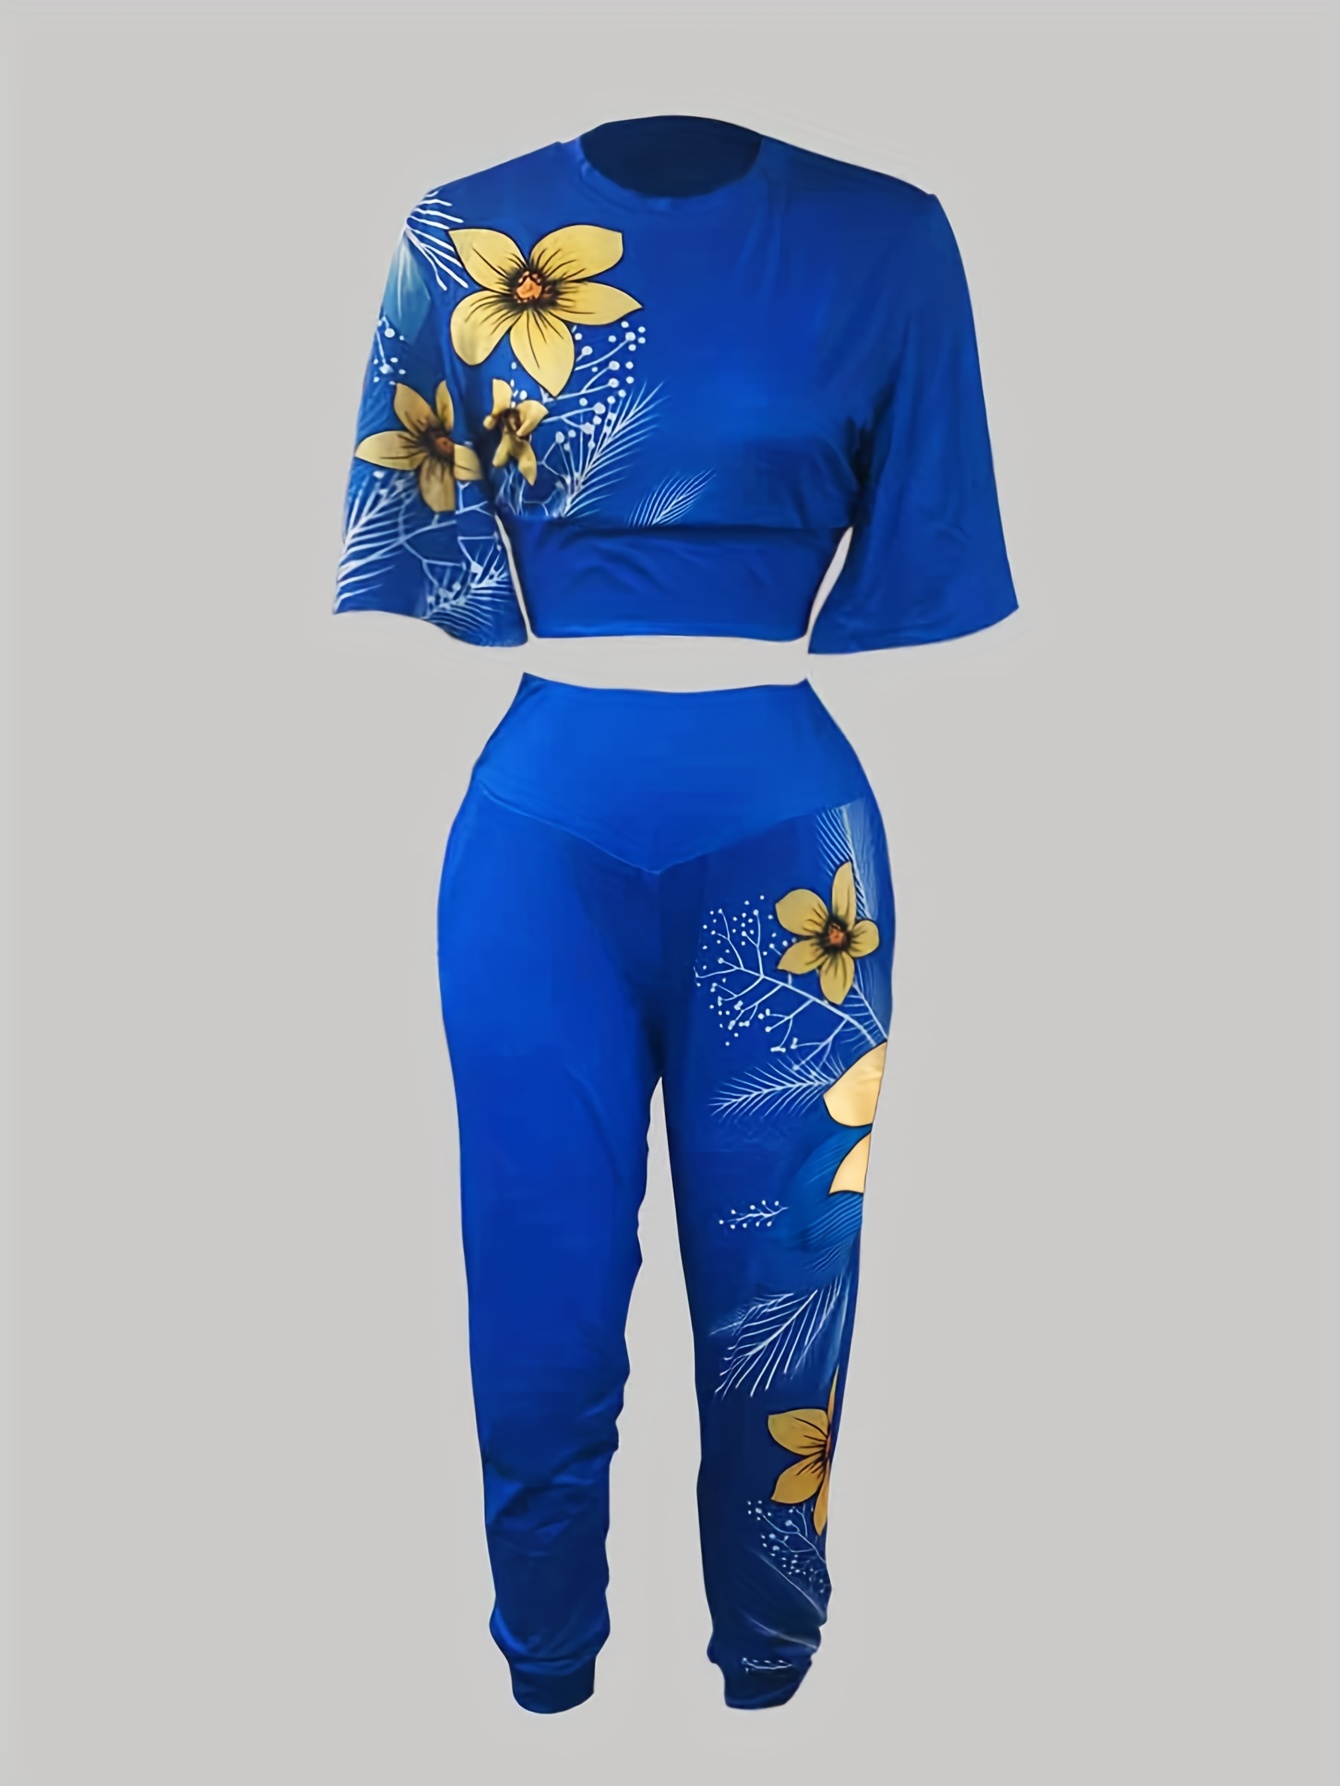 Women's 2 Piece Set - Floral Crop Top and Pants Ensemble / Navy Blue